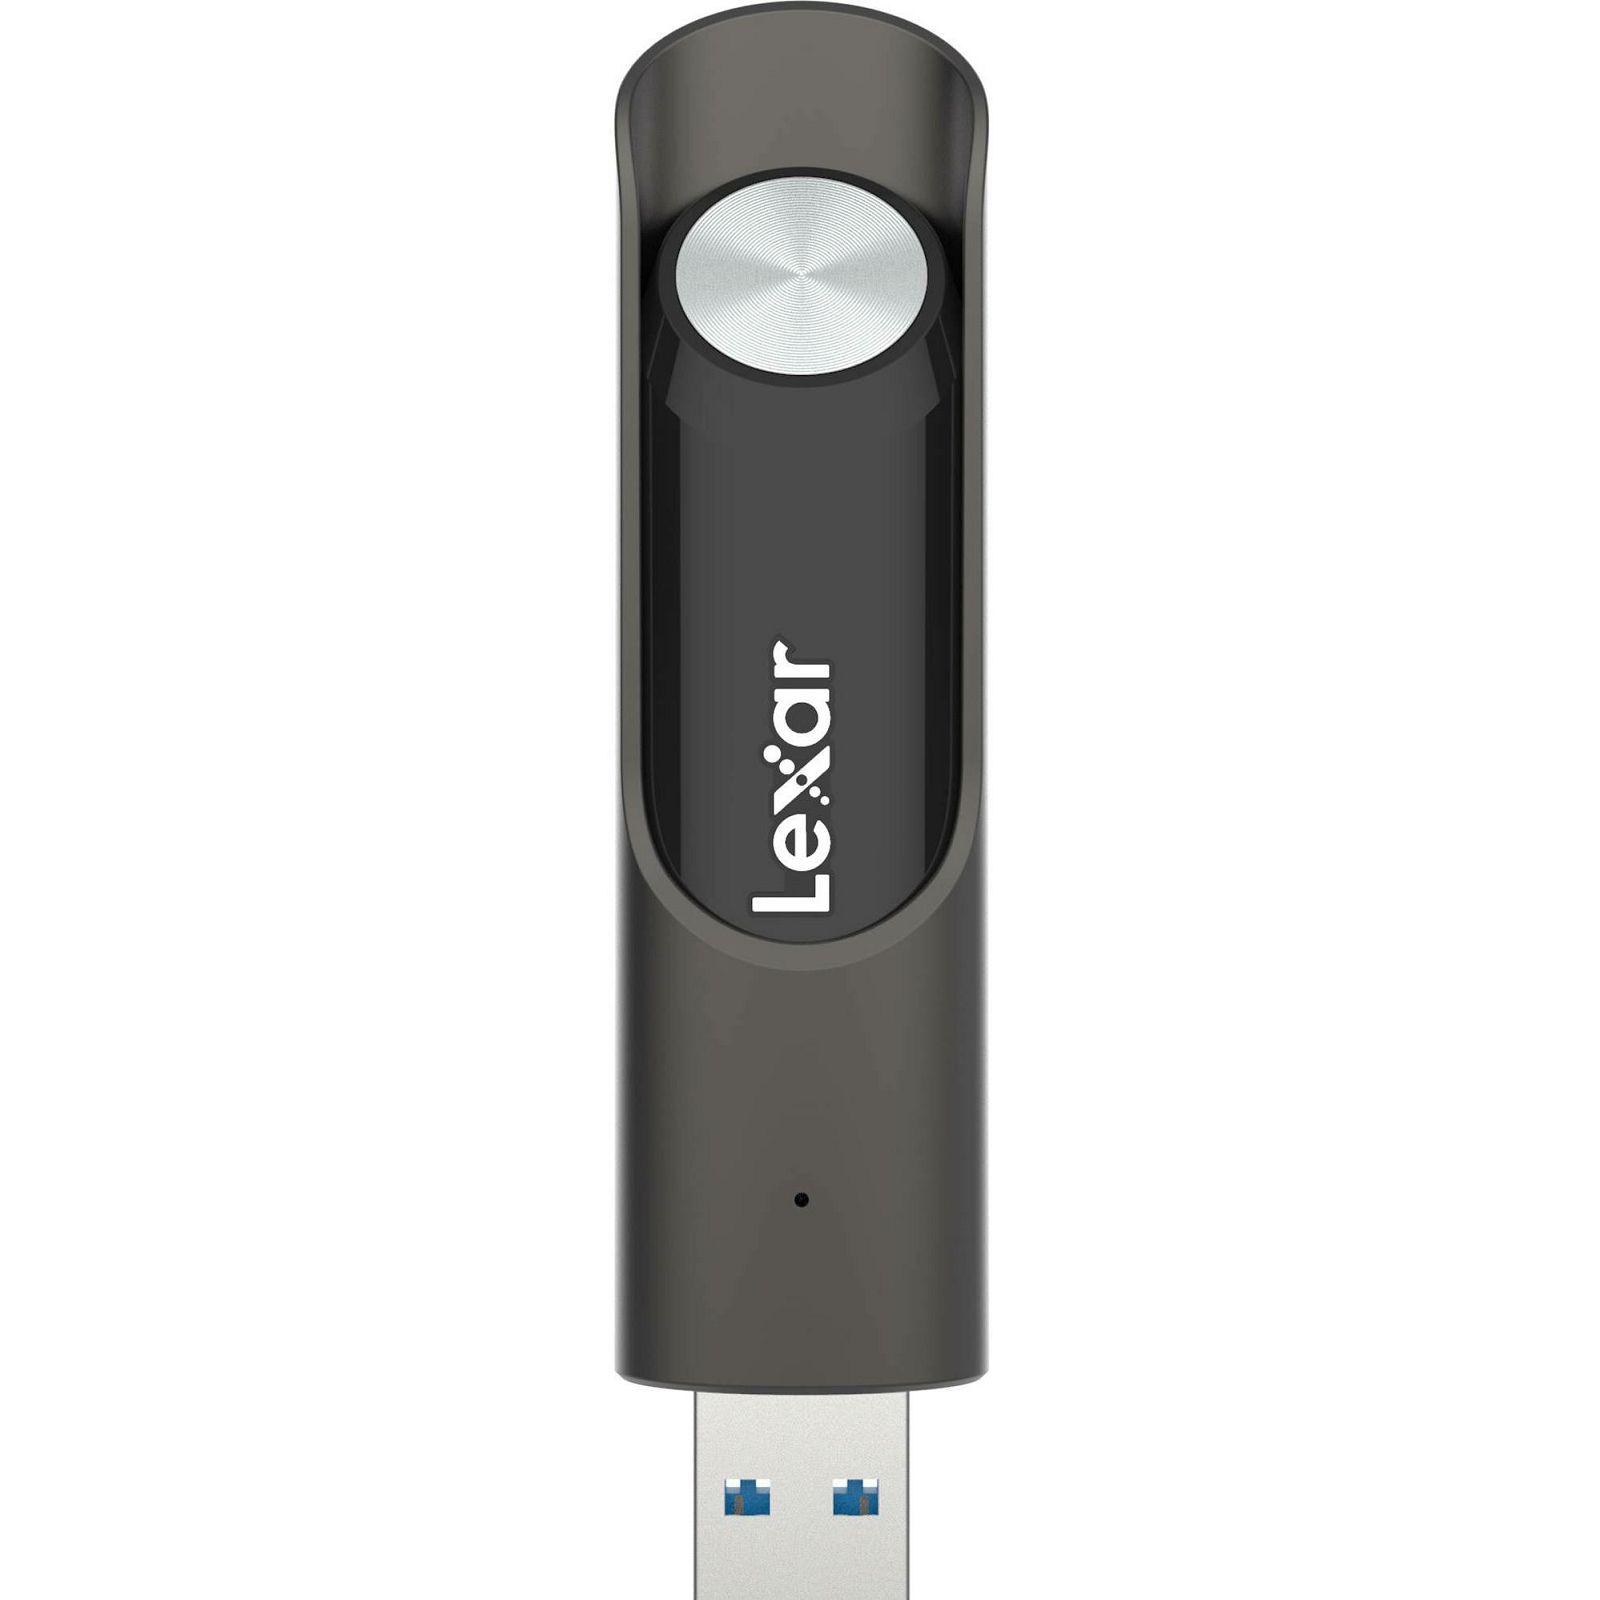 Lexar JumpDrive P30 256GB USB 3.2 Gen 1 Flash Drive 450MB/s read 450MB/s write memorija (LJDP030256G-RNQNG)